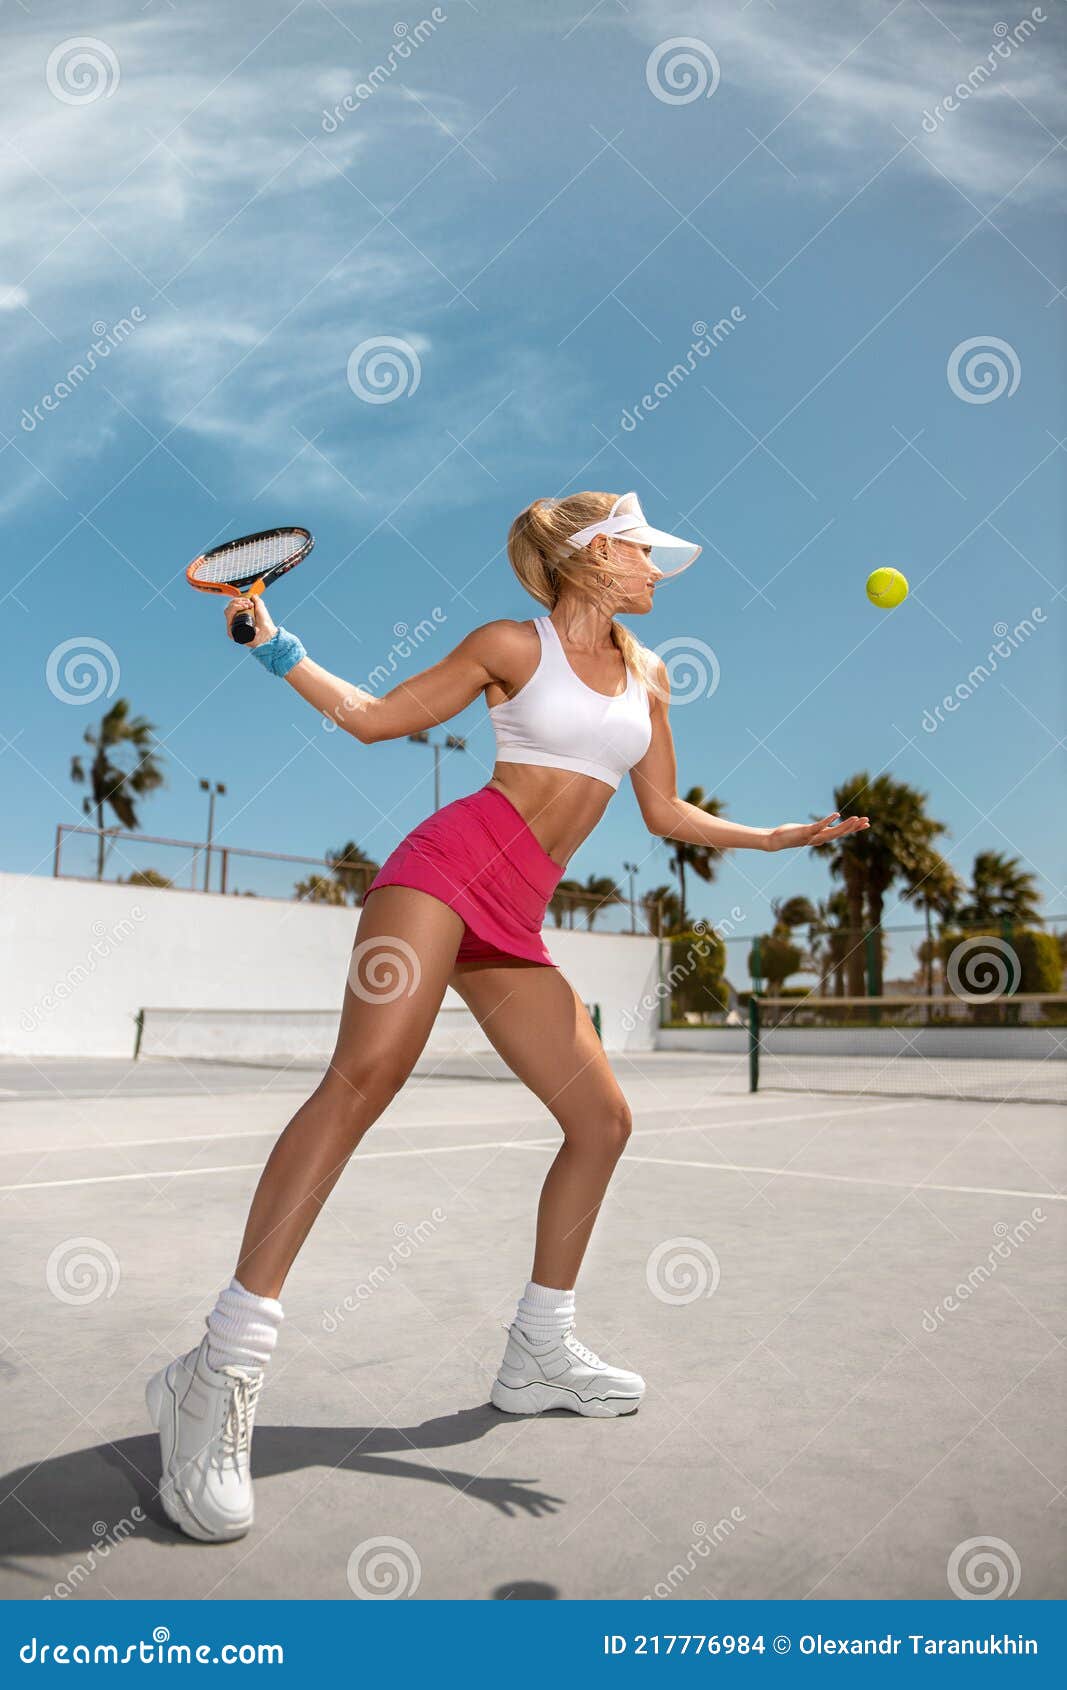 Hermosa Rubia La Cancha De Tenis El Traje De Tenis Blanco En Corto Scirt Está Listo Para El Juego Foto de archivo - Imagen de feliz, jugador: 217776984